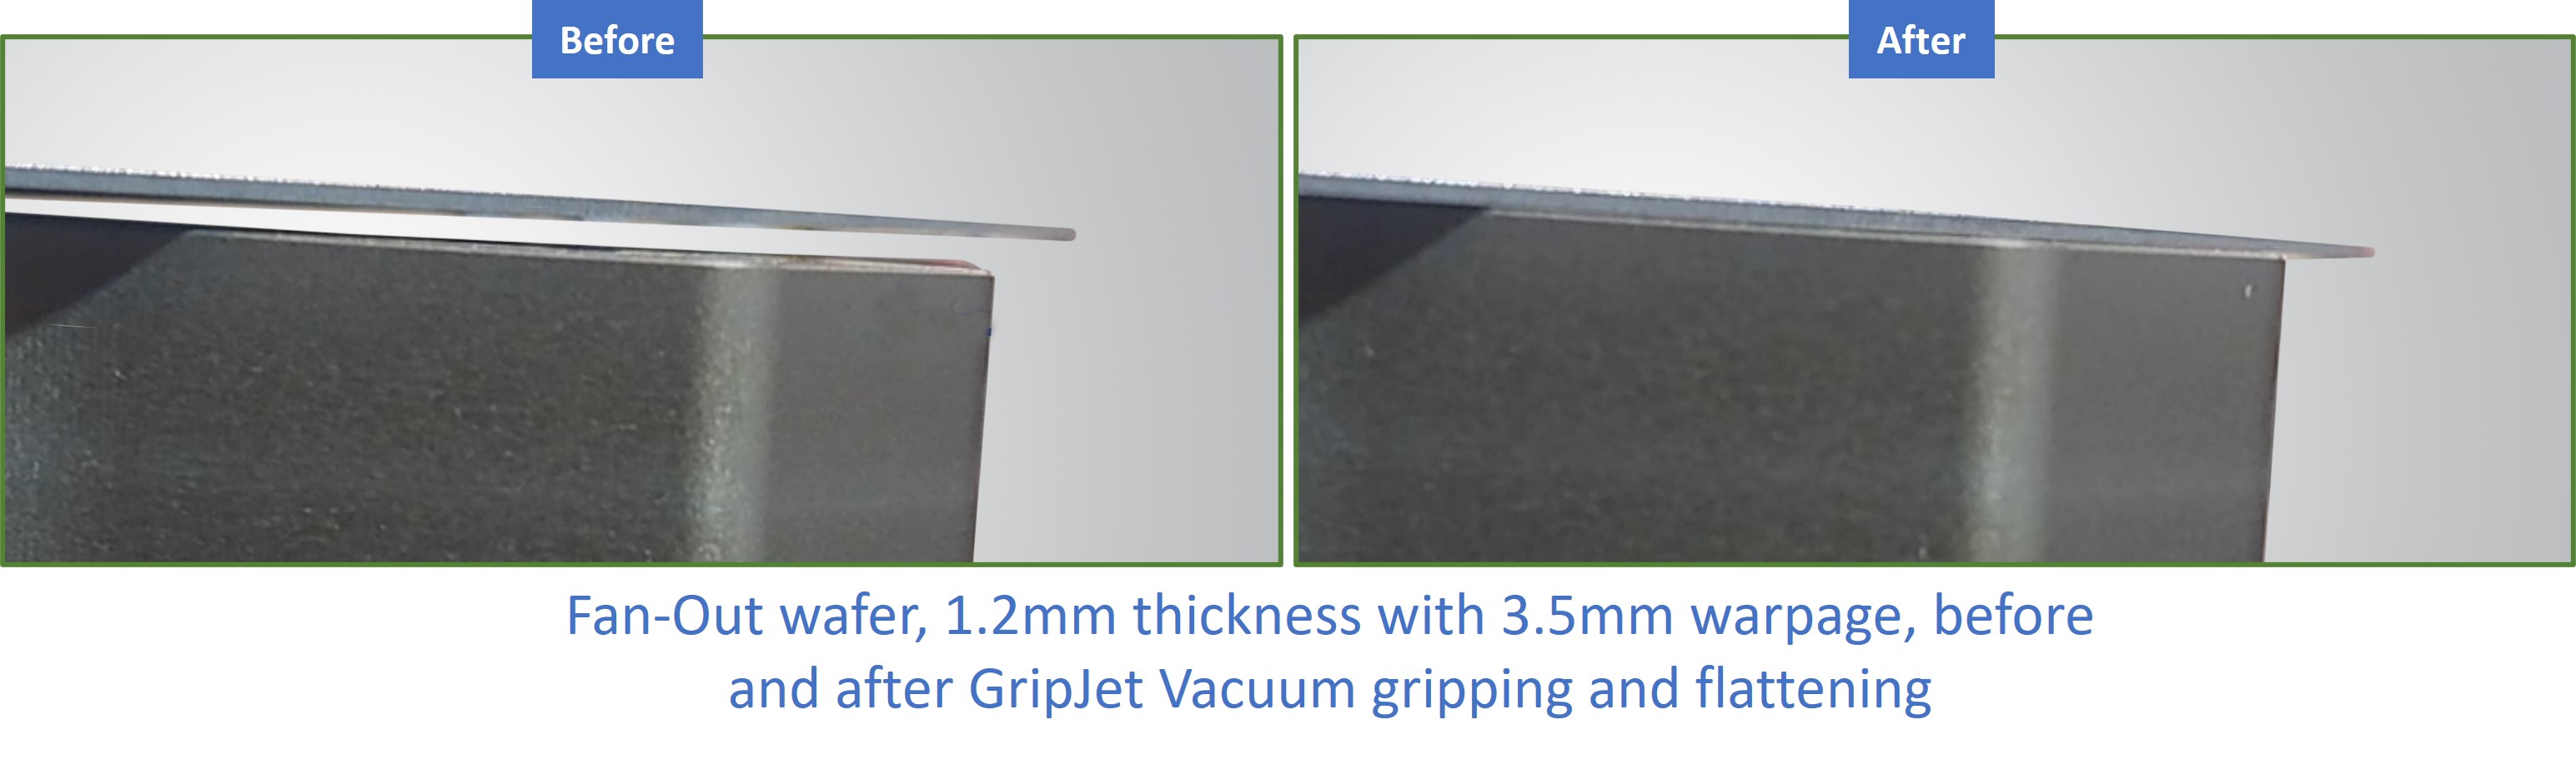 GripJet chuck 3.5mm warped flat